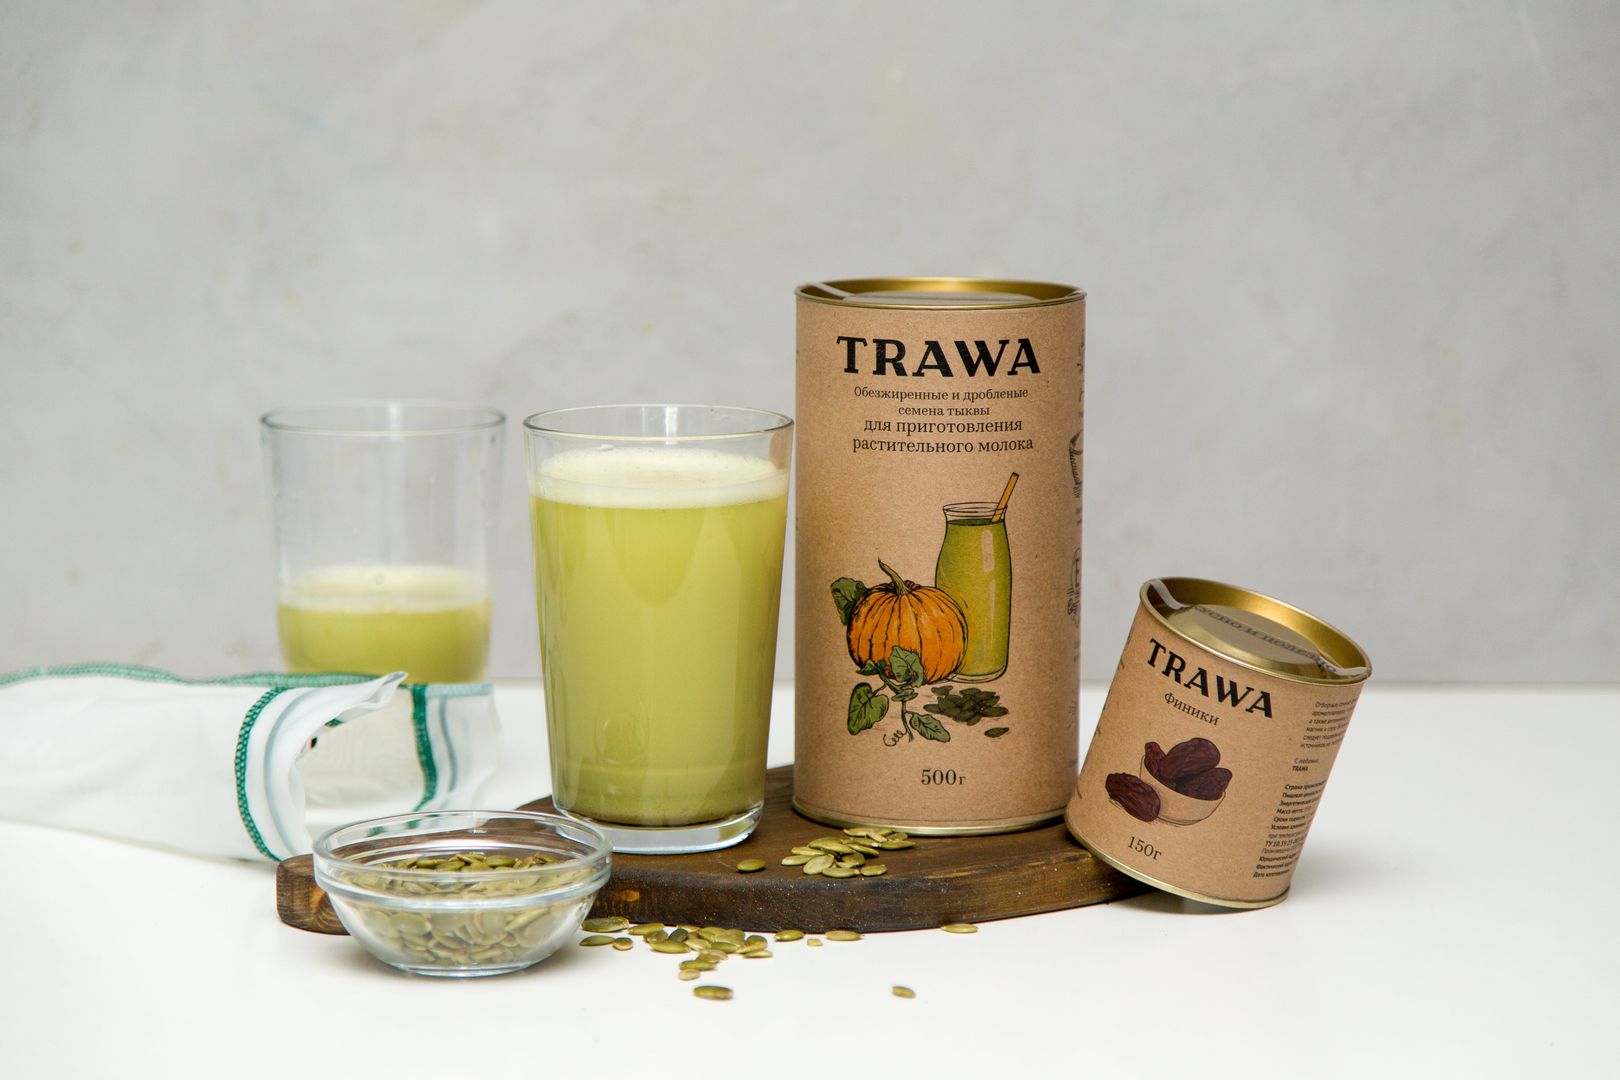 Обезжиренные и дробленые семена тыквы для приготовления растительного молока купить онлайн на сайте TRAWA